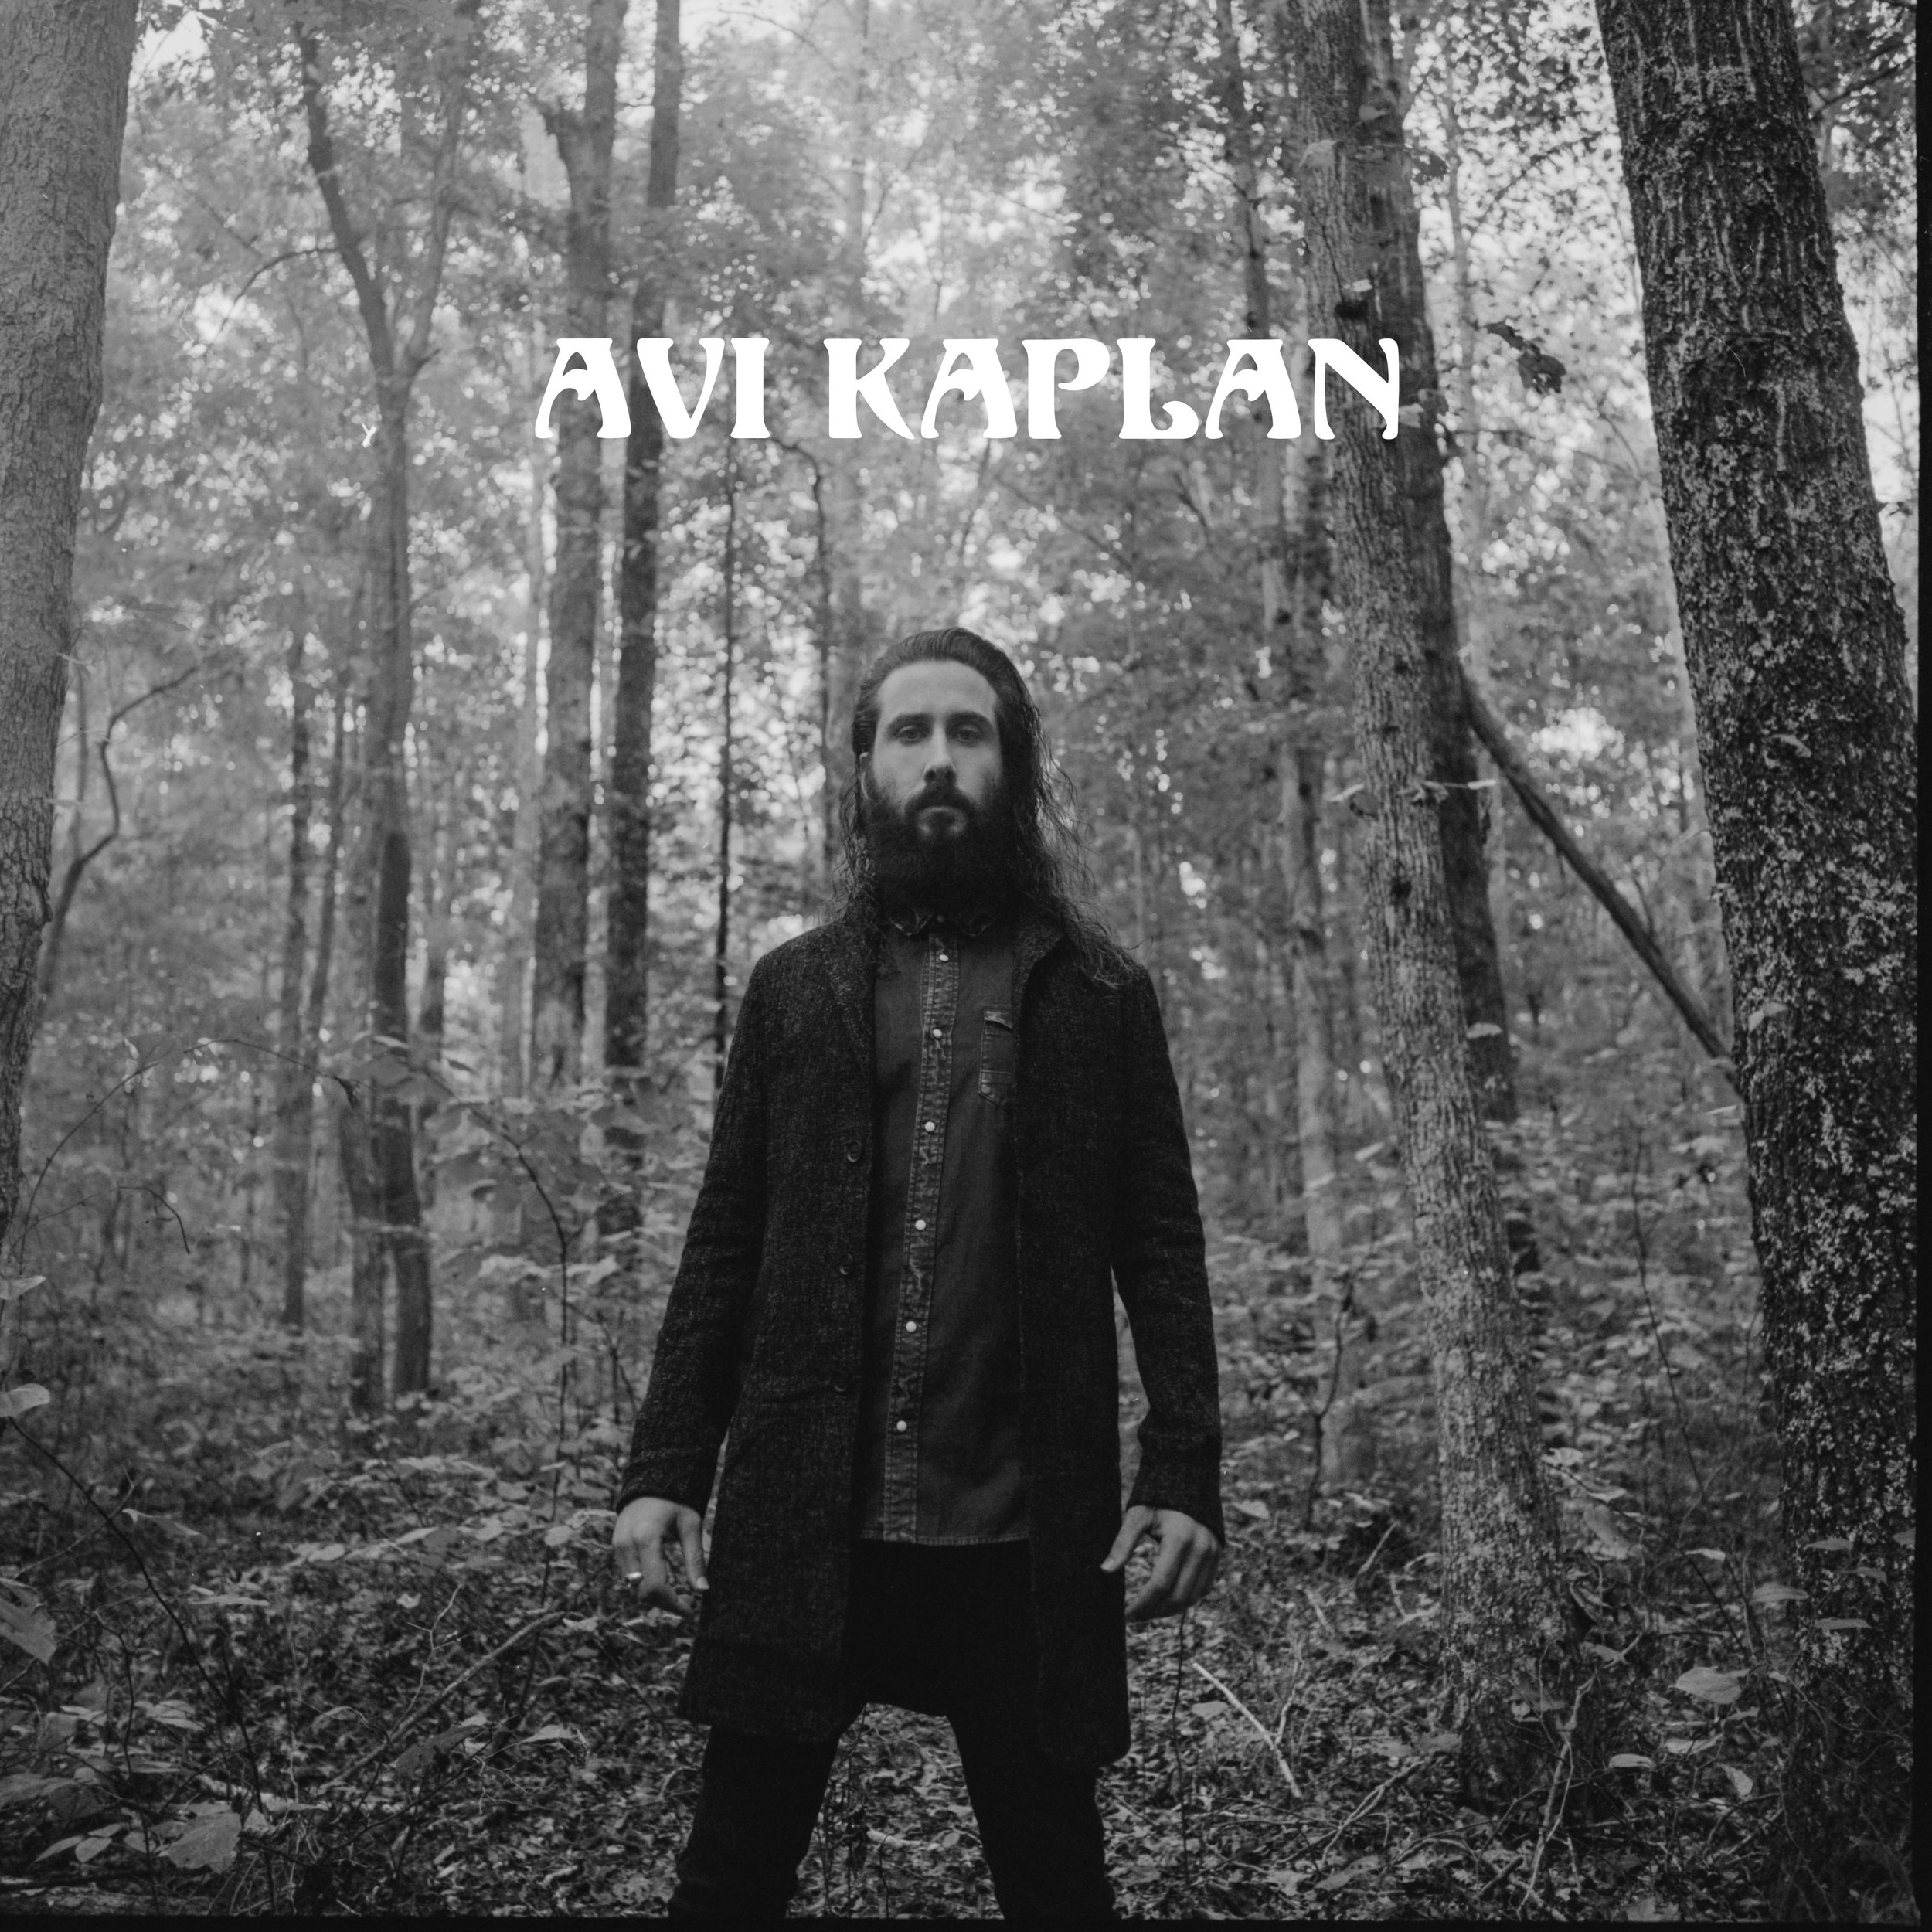 Avi Kaplan | Official website of Avi Kaplan